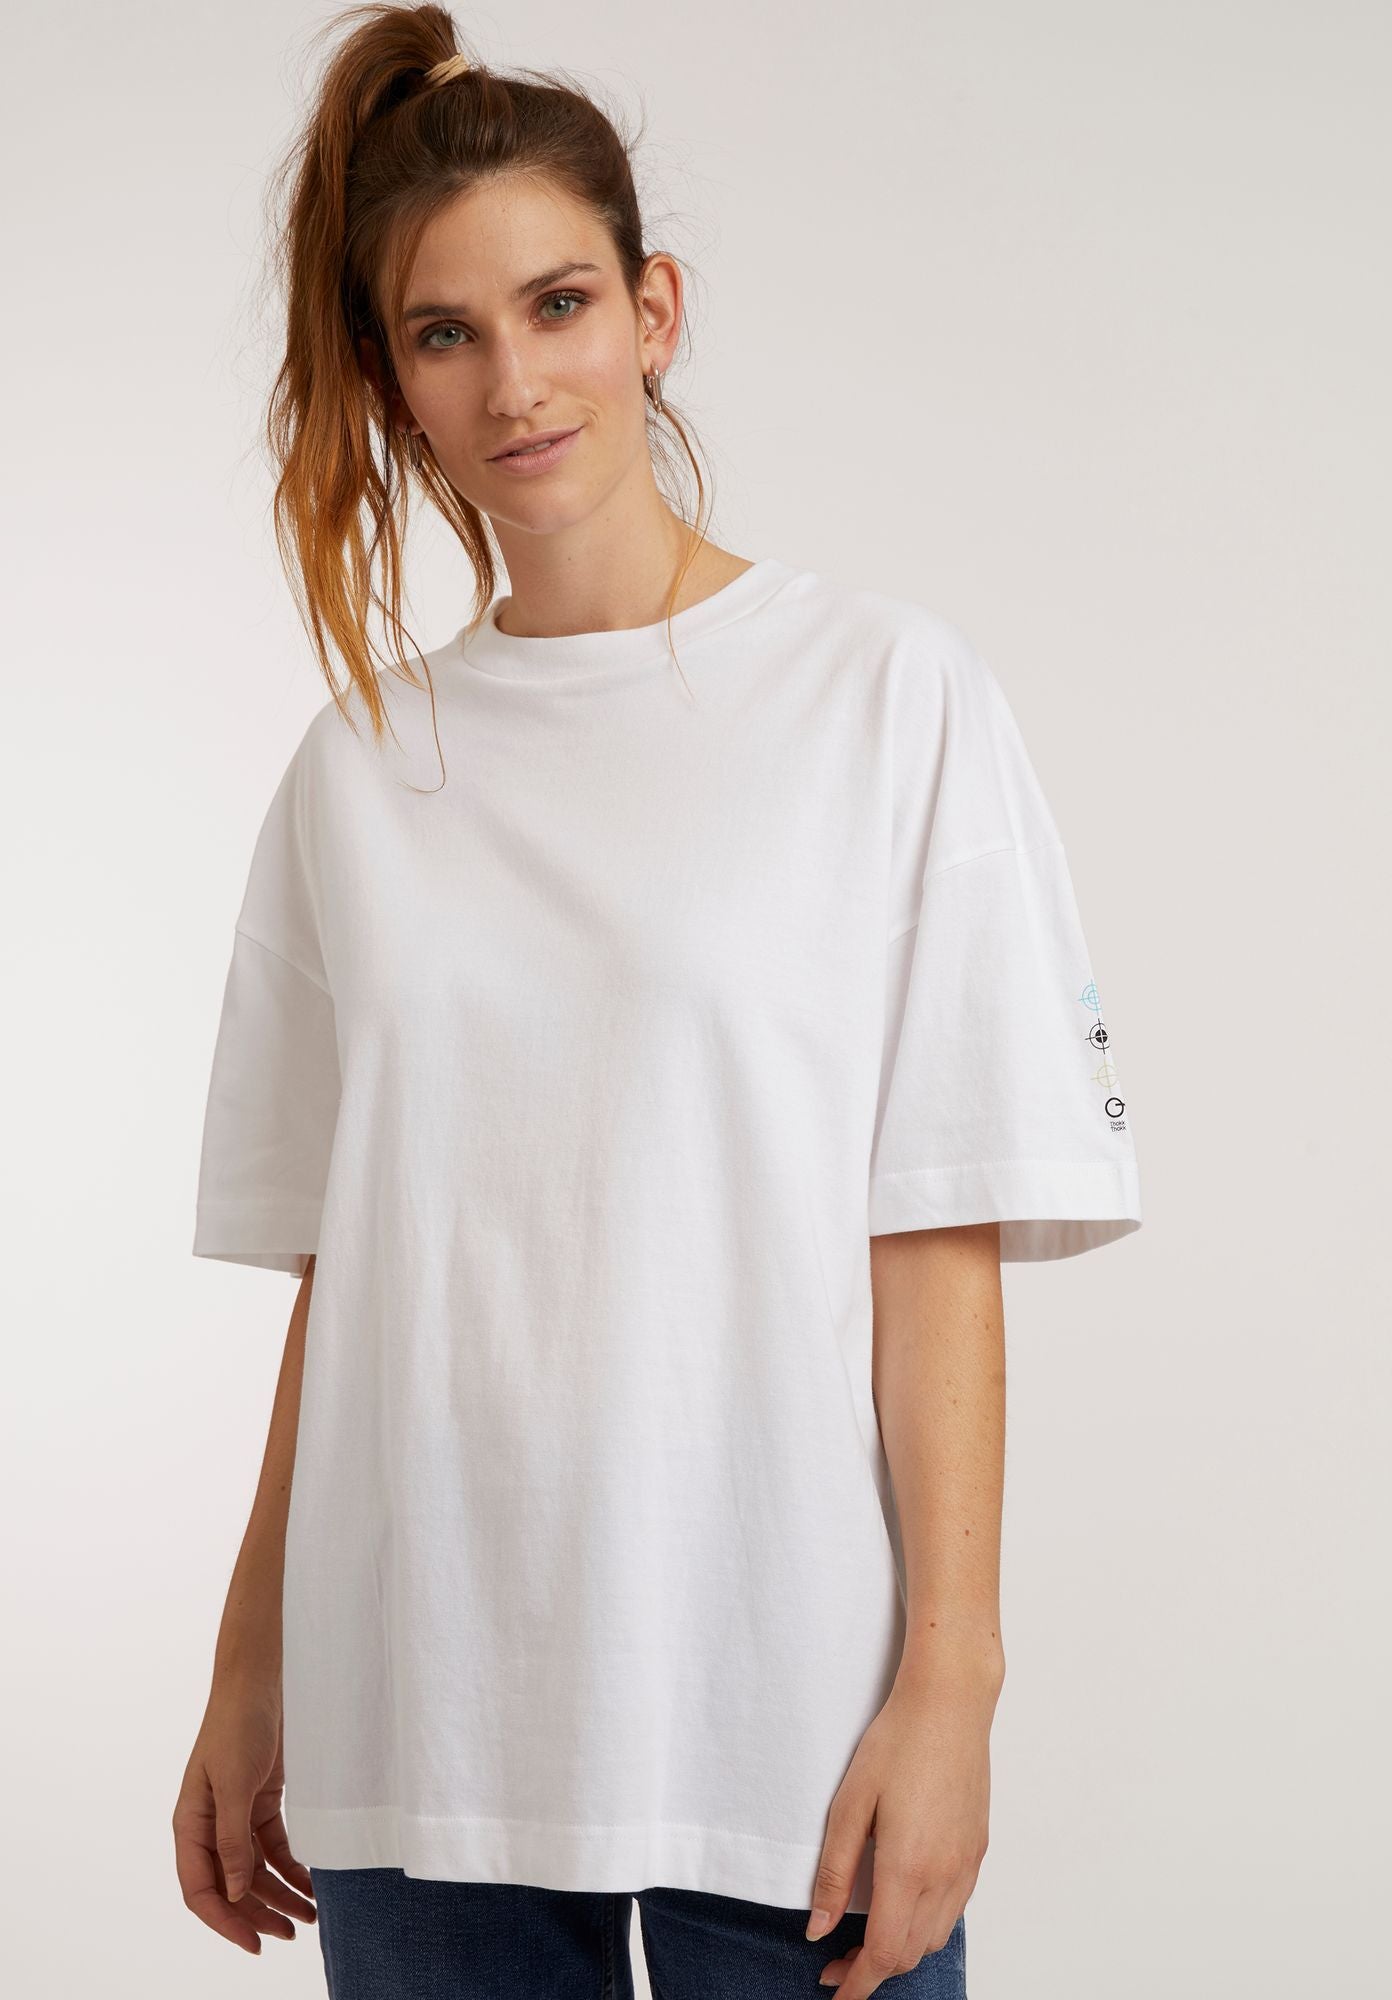 Grande chemise unisexe en blanc avec imprimé au dos par ThokkThokk (S)